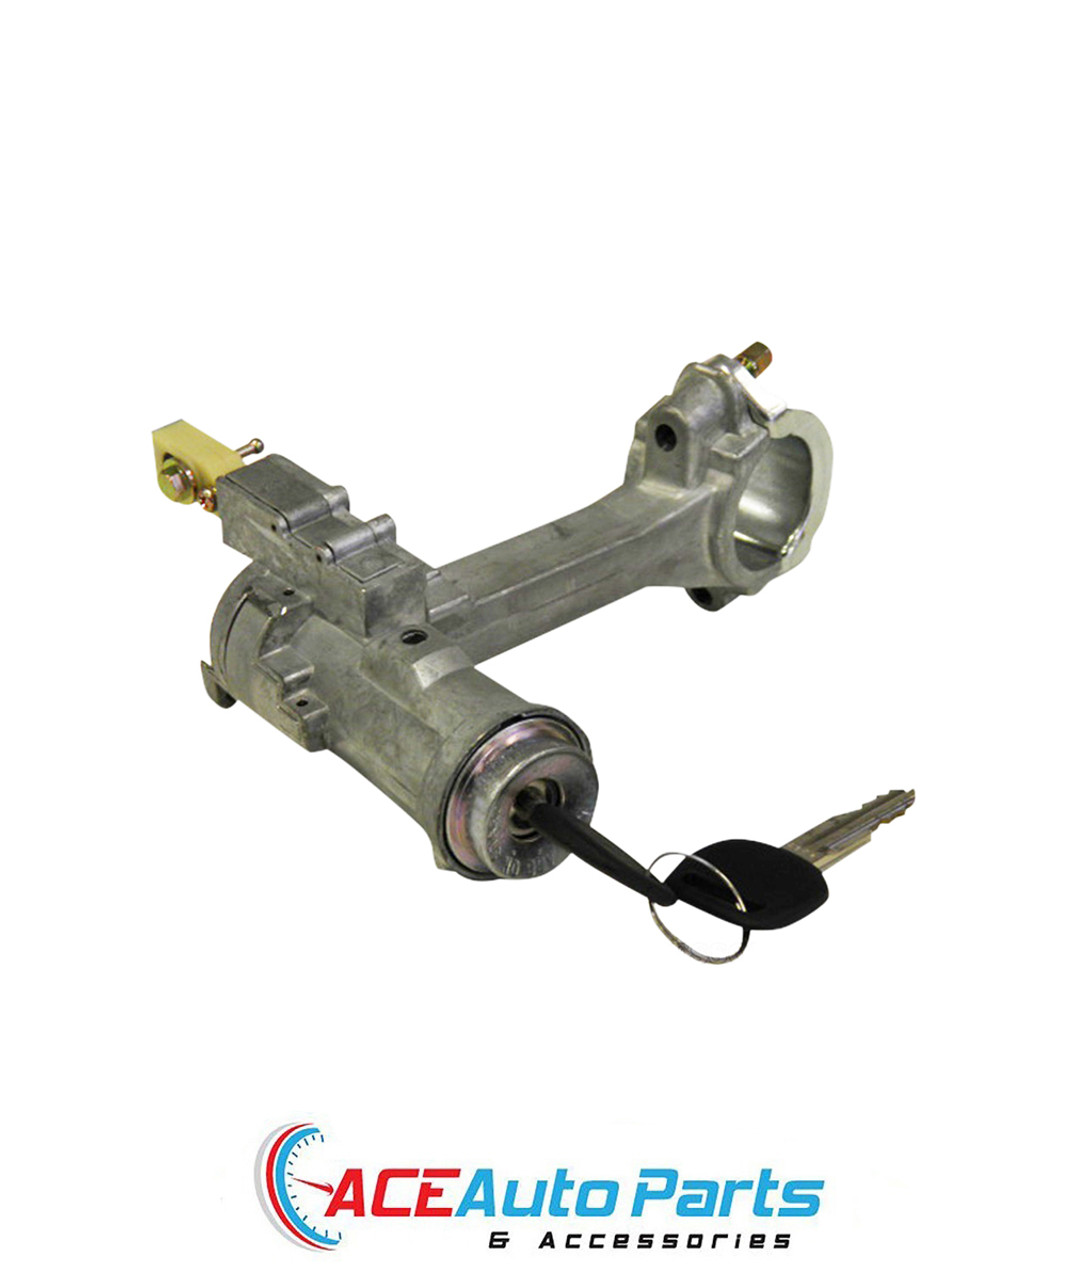 Ignition Barrel Lock For Toyota Corolla AE90+AE92+AE93+AE94+AE95